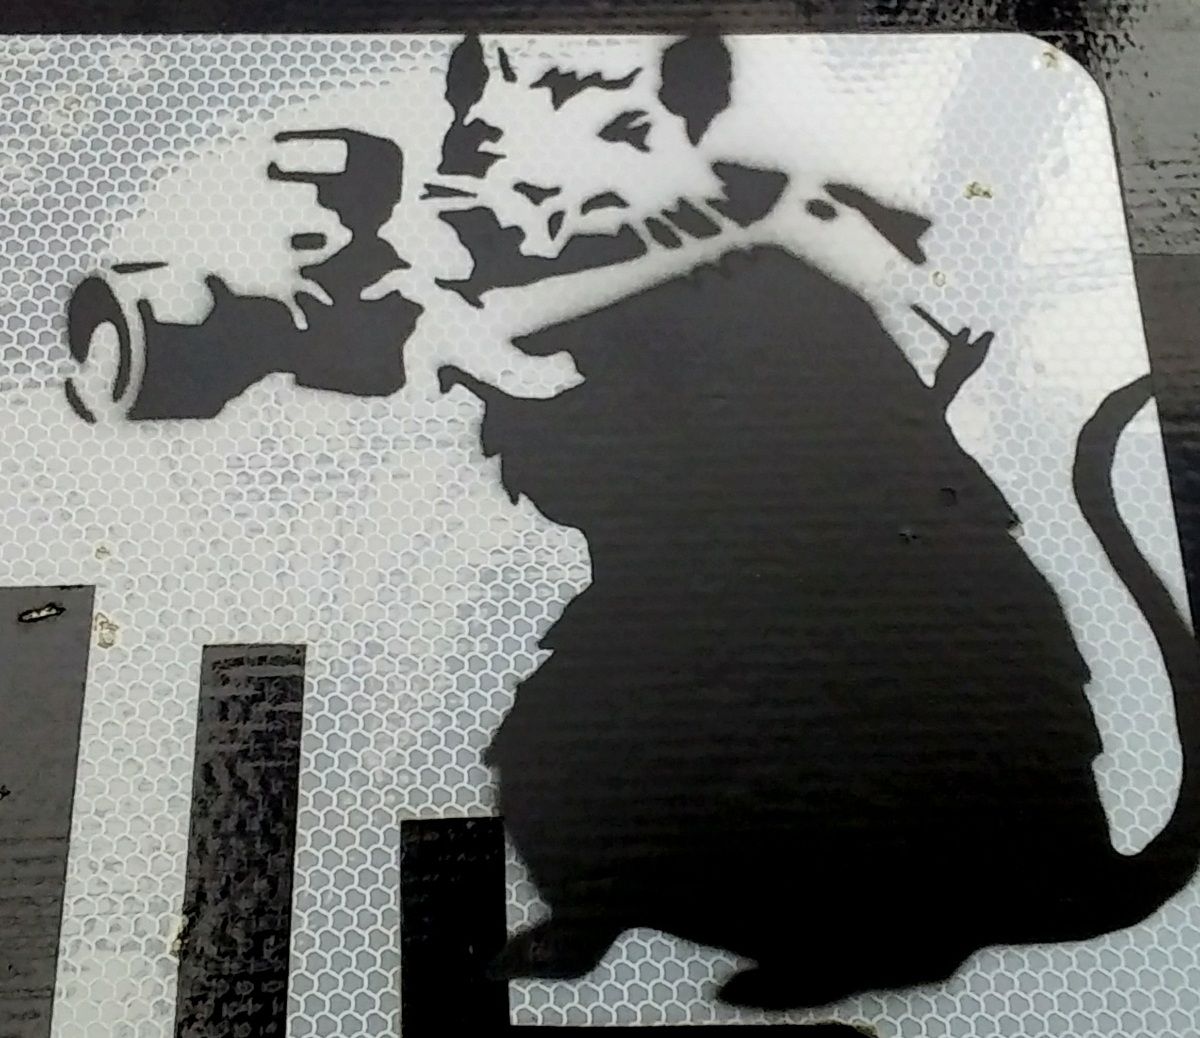  новый цена!Banksy( банк si-). load автограф [Paparazzi Rat] дорога опознавательный знак.2000 год примерно Англия улица среди обнаружение, очень большой Street искусство произведение #R&SD. COA